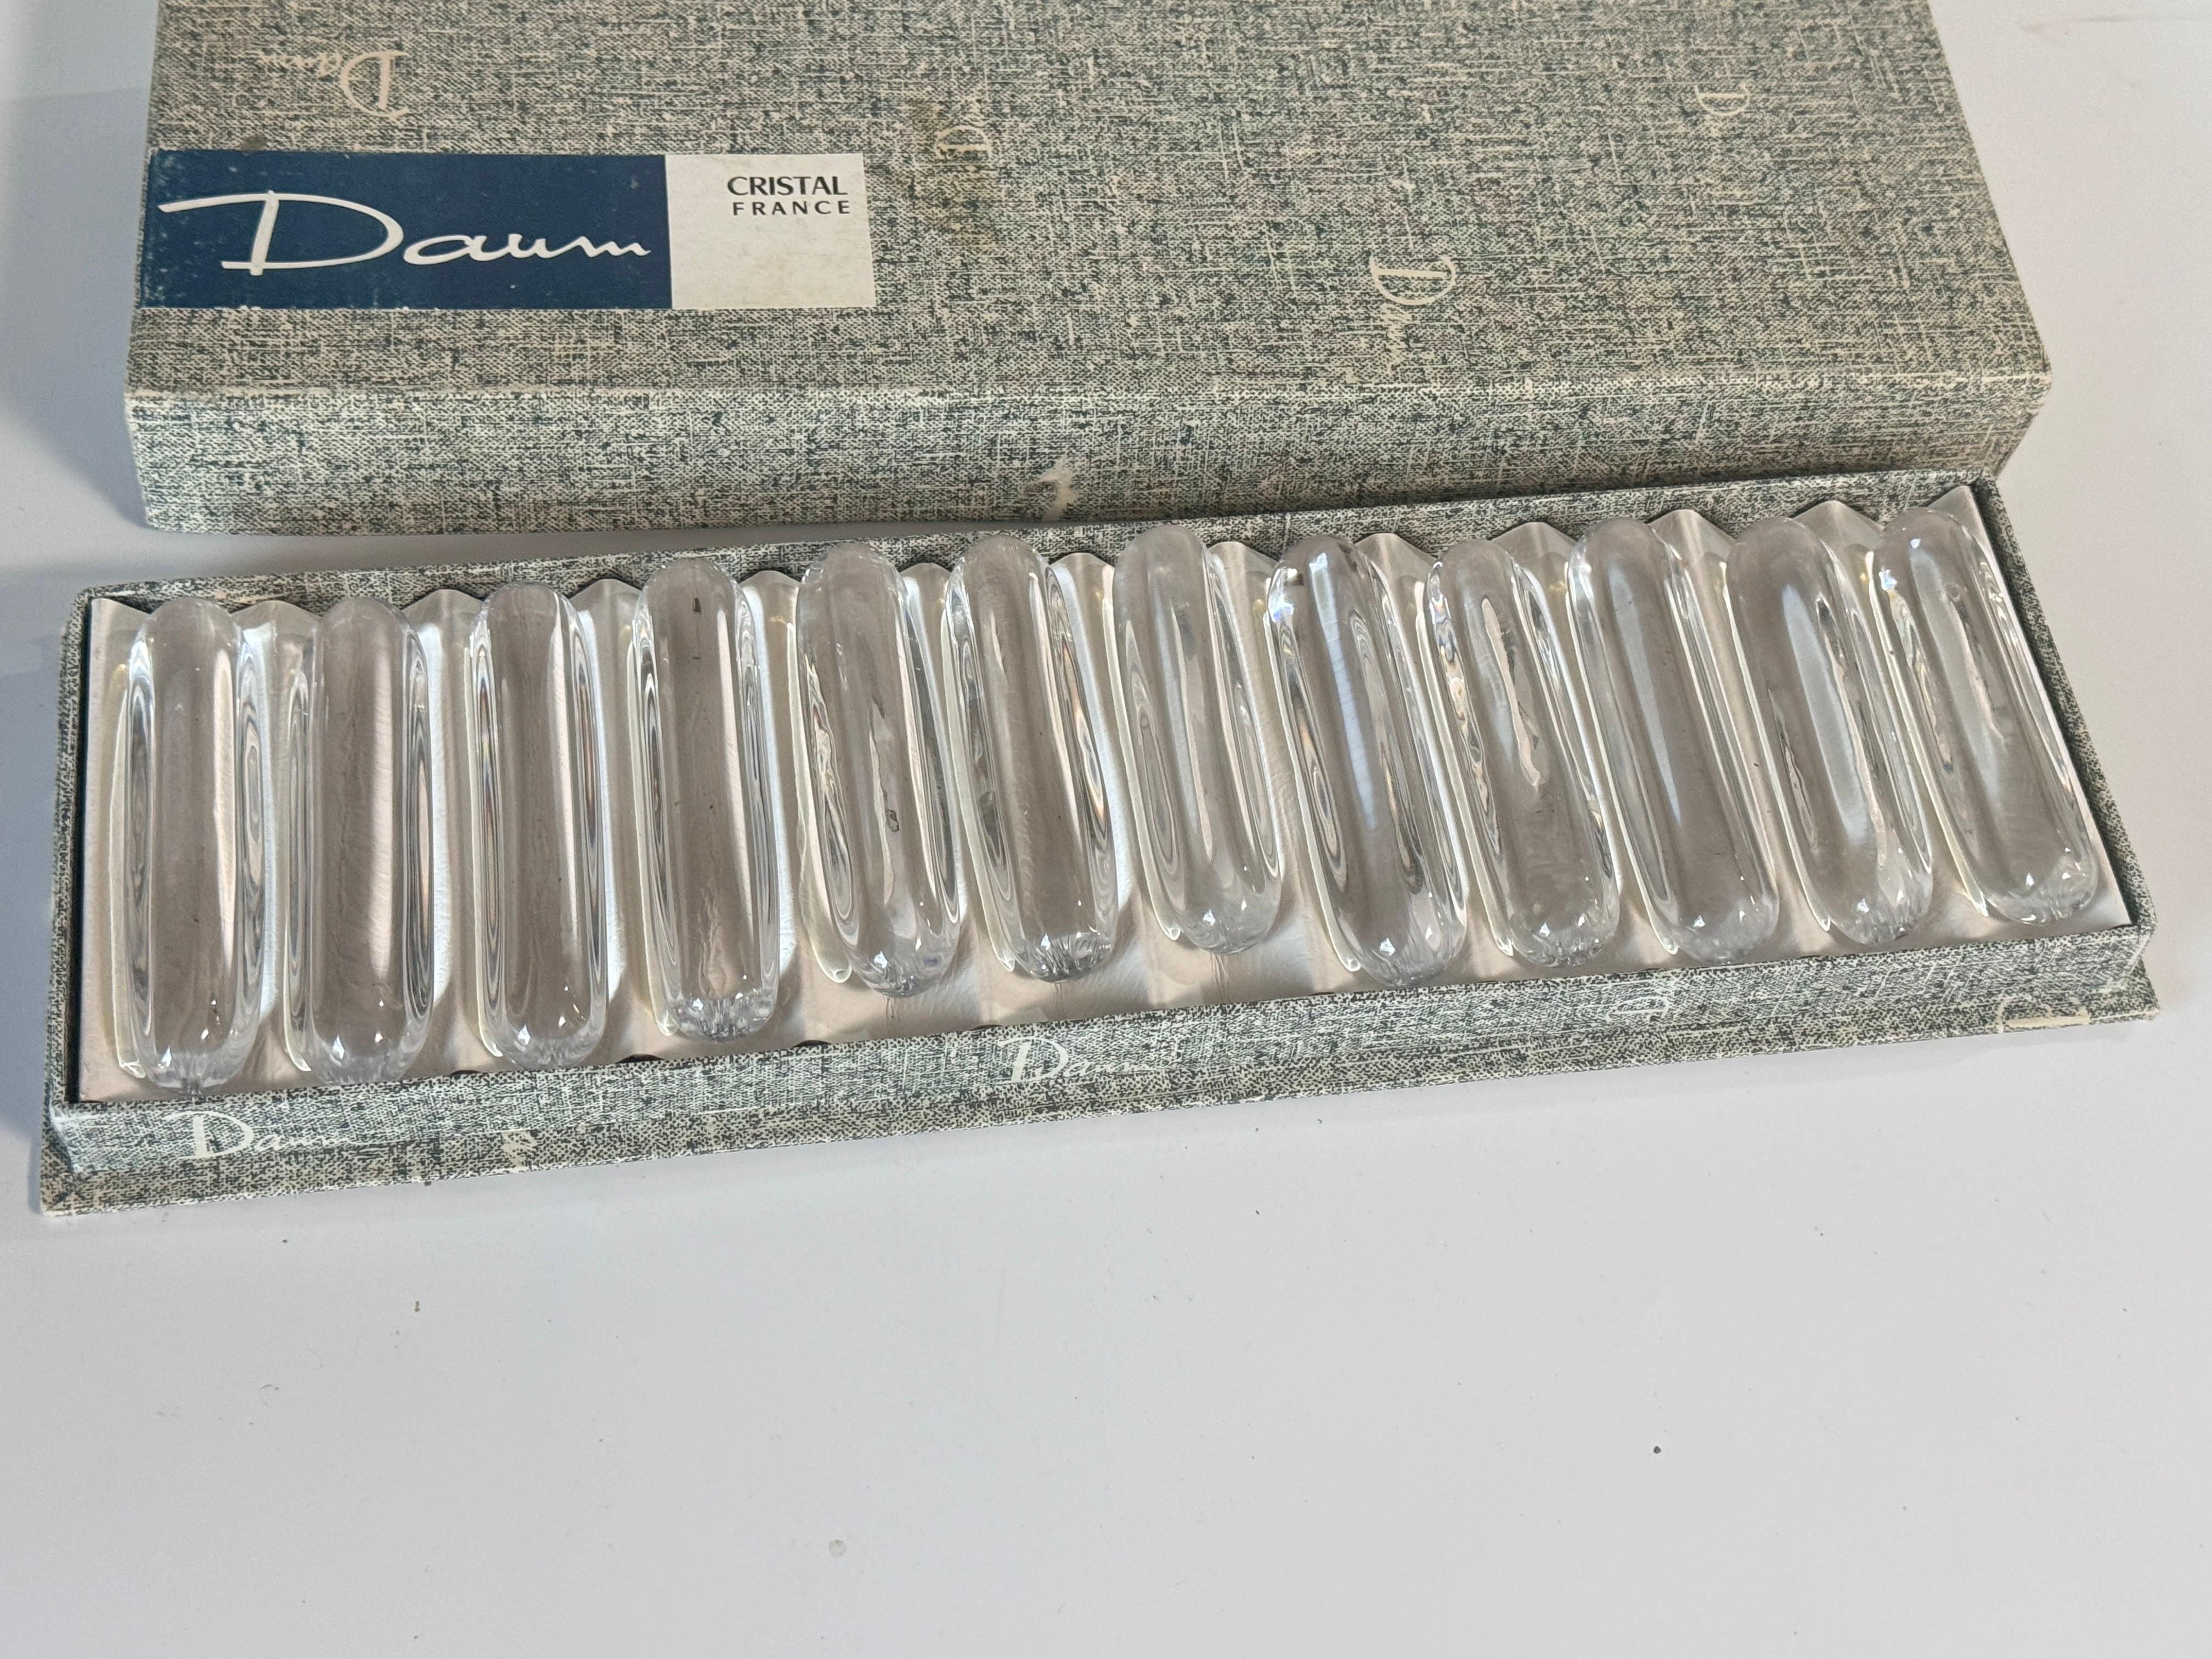 Wunderschönes Set mit 12 Messerhaltern aus Kristall der französischen Marke Daum Nancy. Die Messerablagen haben ein elegantes und schlichtes Design, das die Qualität des Kristalls schön zur Geltung bringt. Es sieht fast wie Wassertropfen aus, so